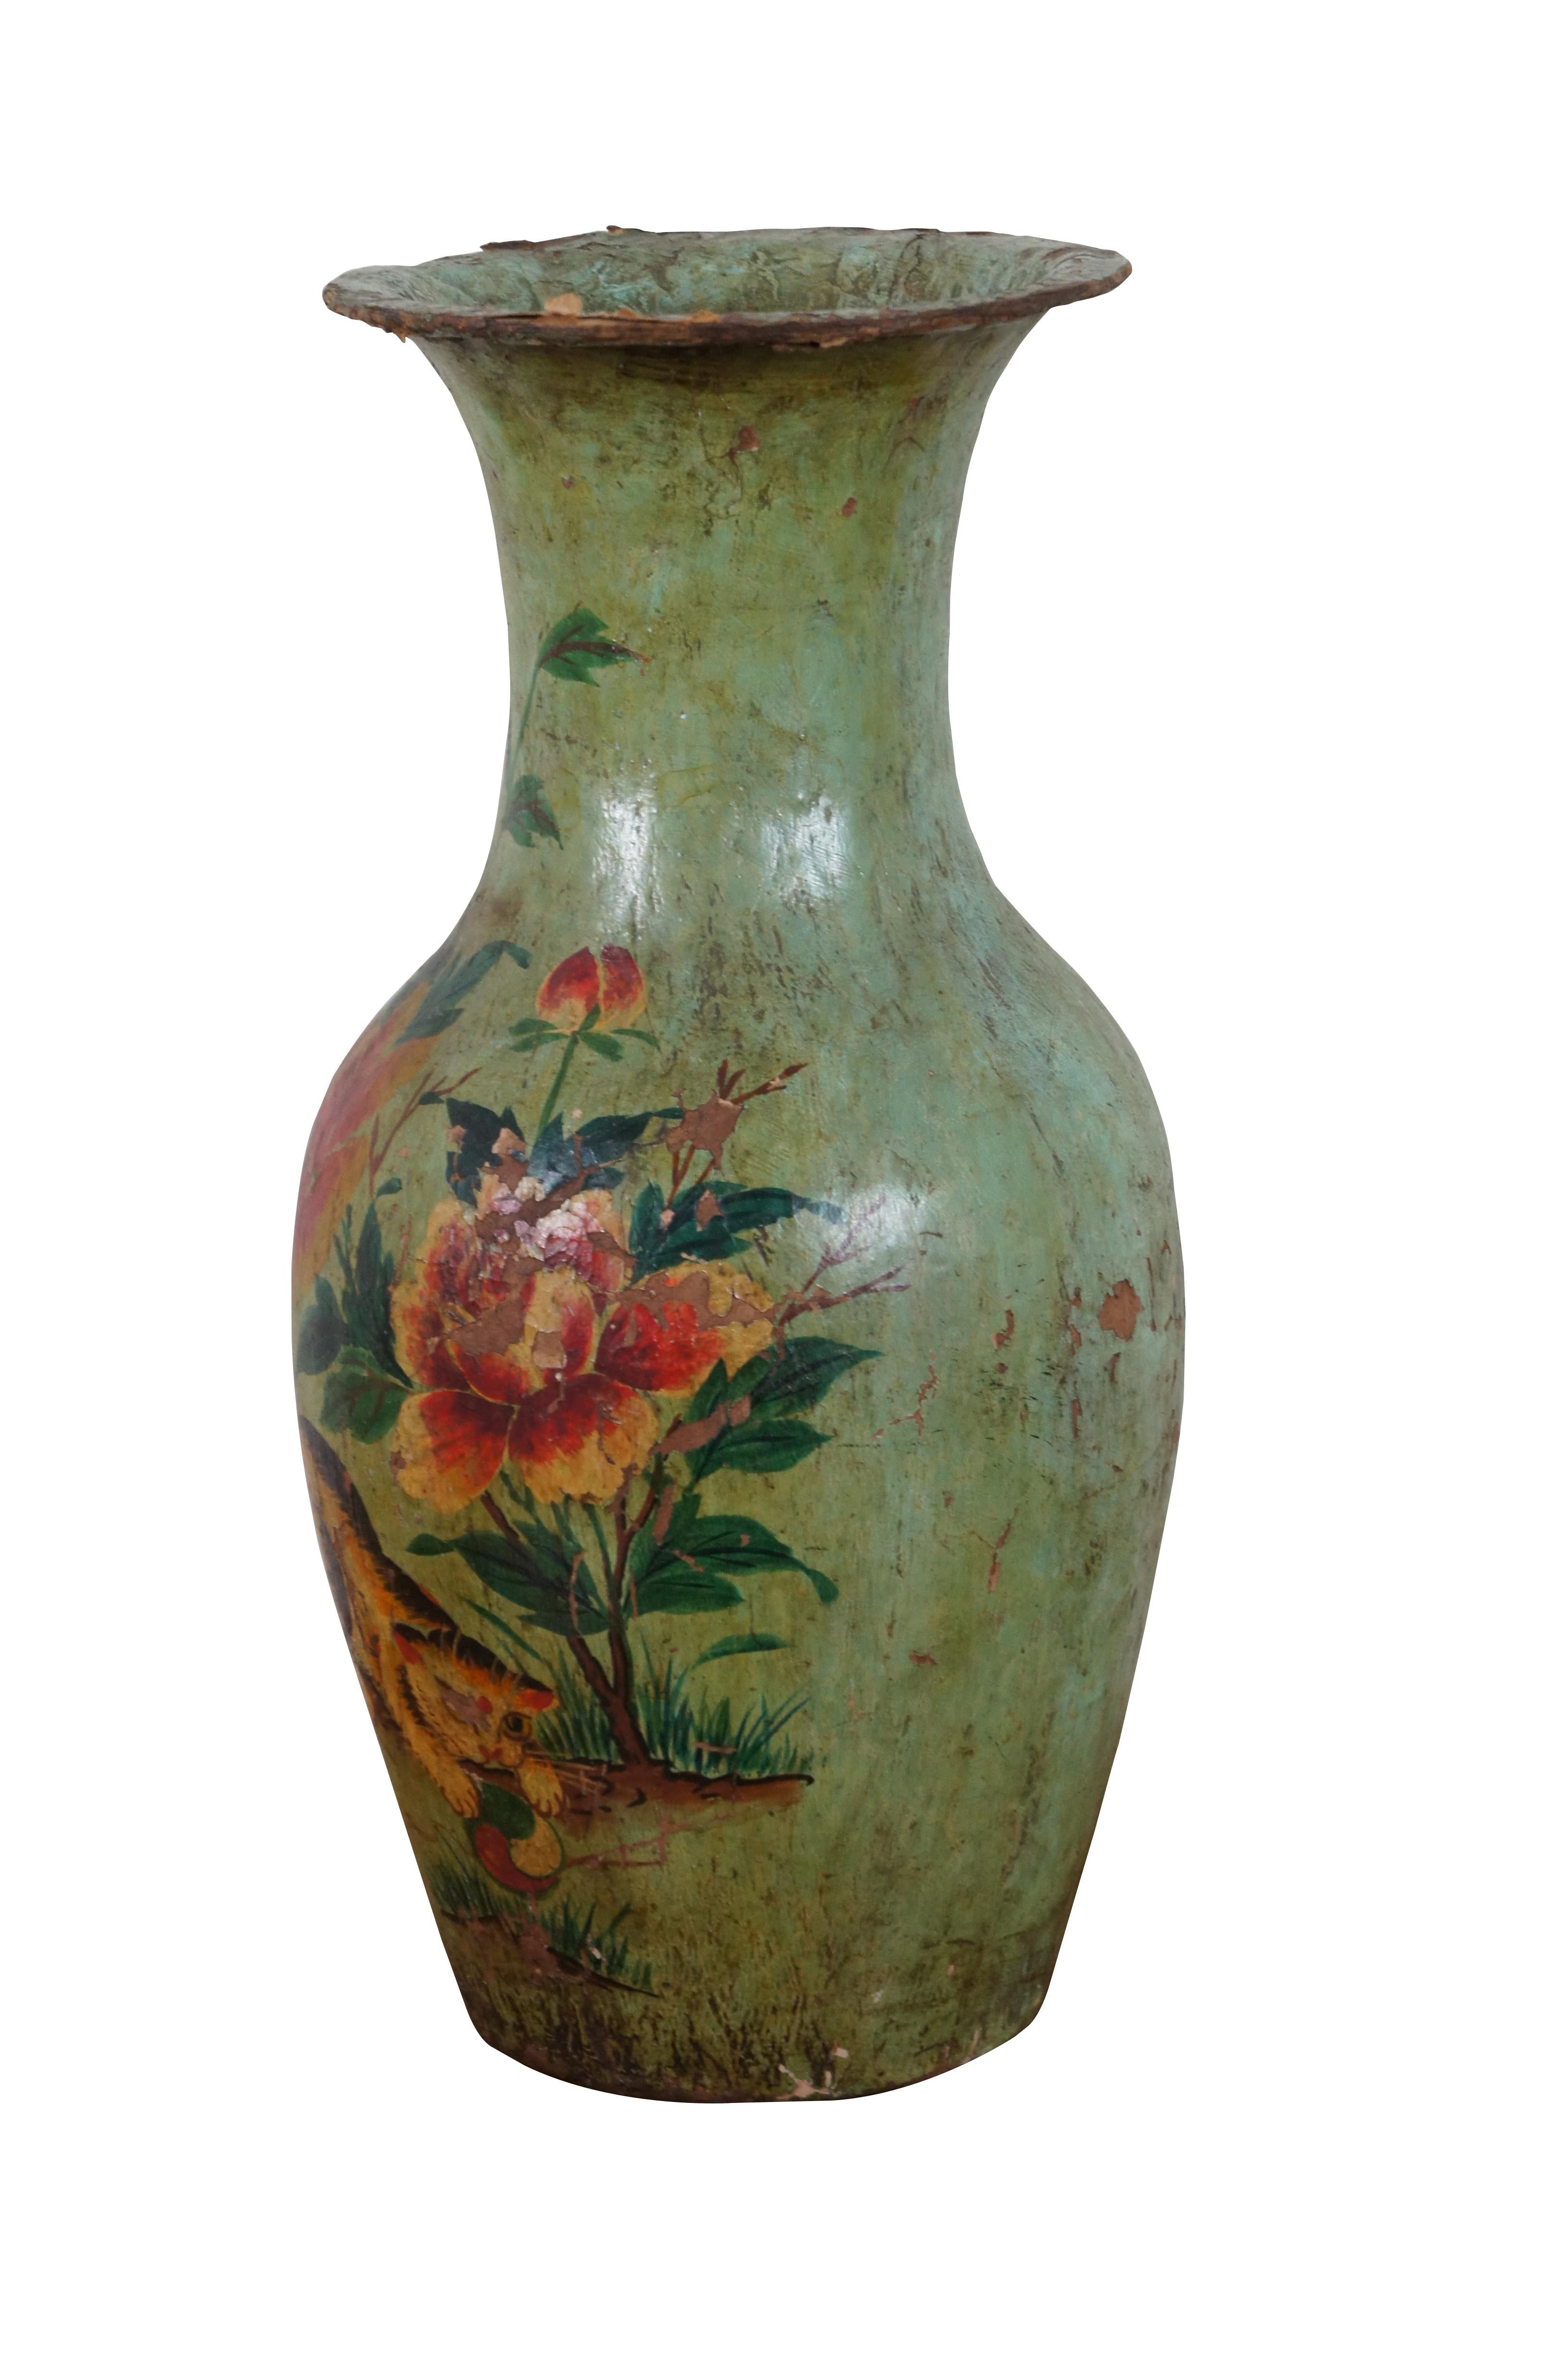 Antike chinesische Vase aus Pappmaché aus den 1930er Jahren, grün bemalt mit einem Kätzchen, das mit einem Ball unter einem blühenden Busch spielt. Wachszollstempel auf dem Sockel. Maße: 17